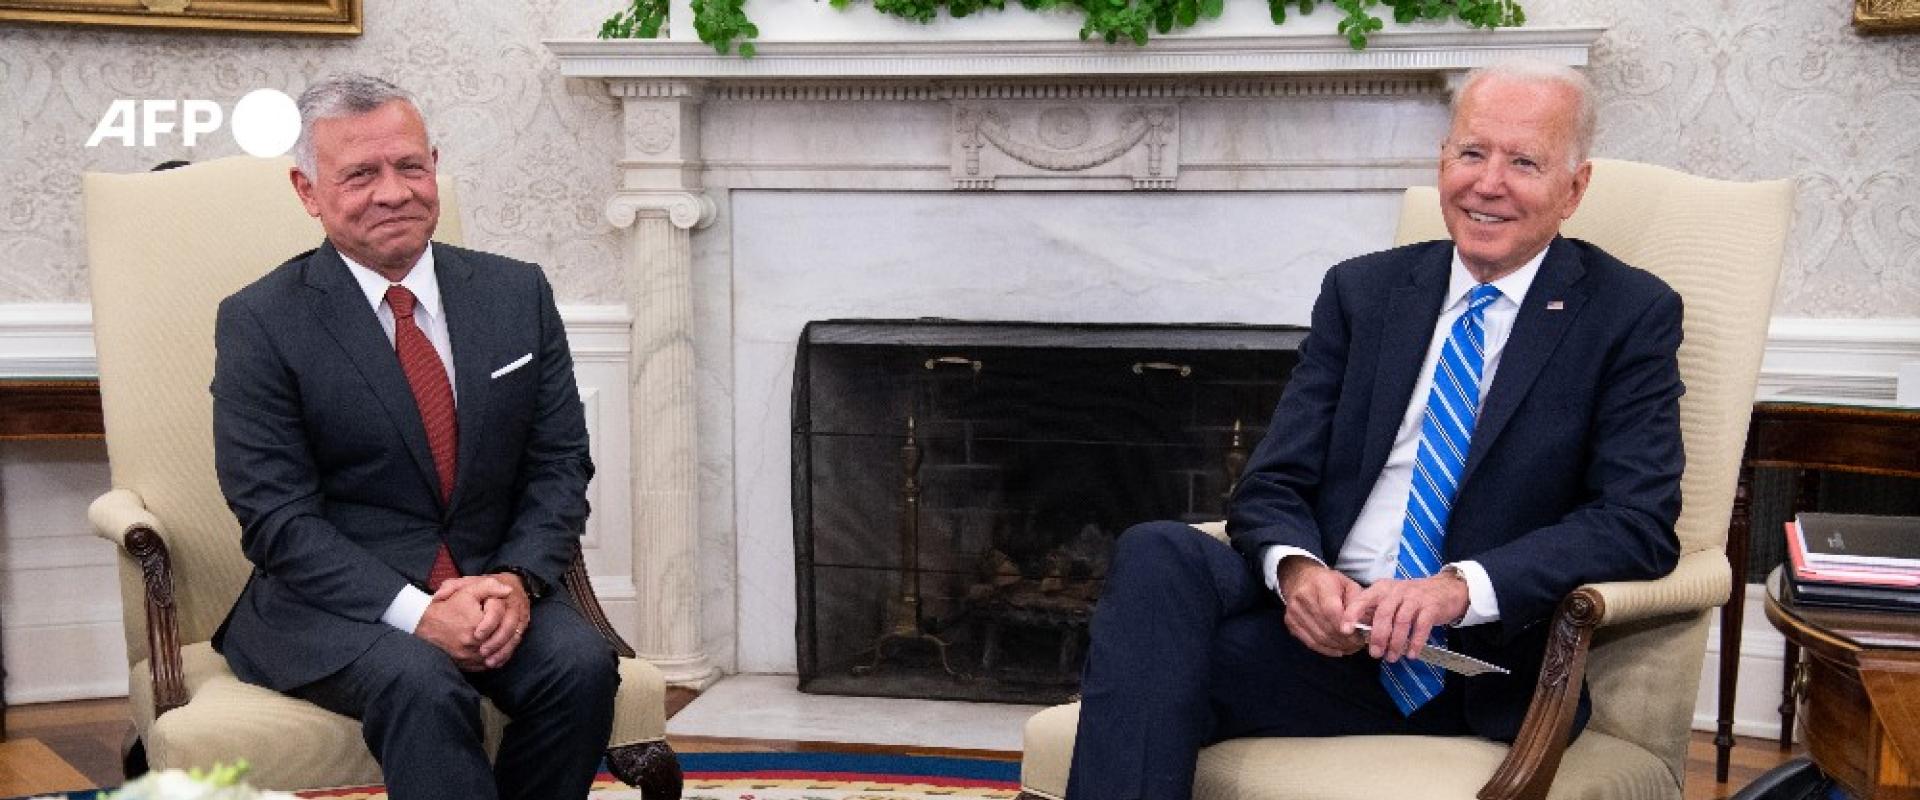 ملك الأردن مع الرئيس الأمريكي بايدن في البيت الأبيض AFP